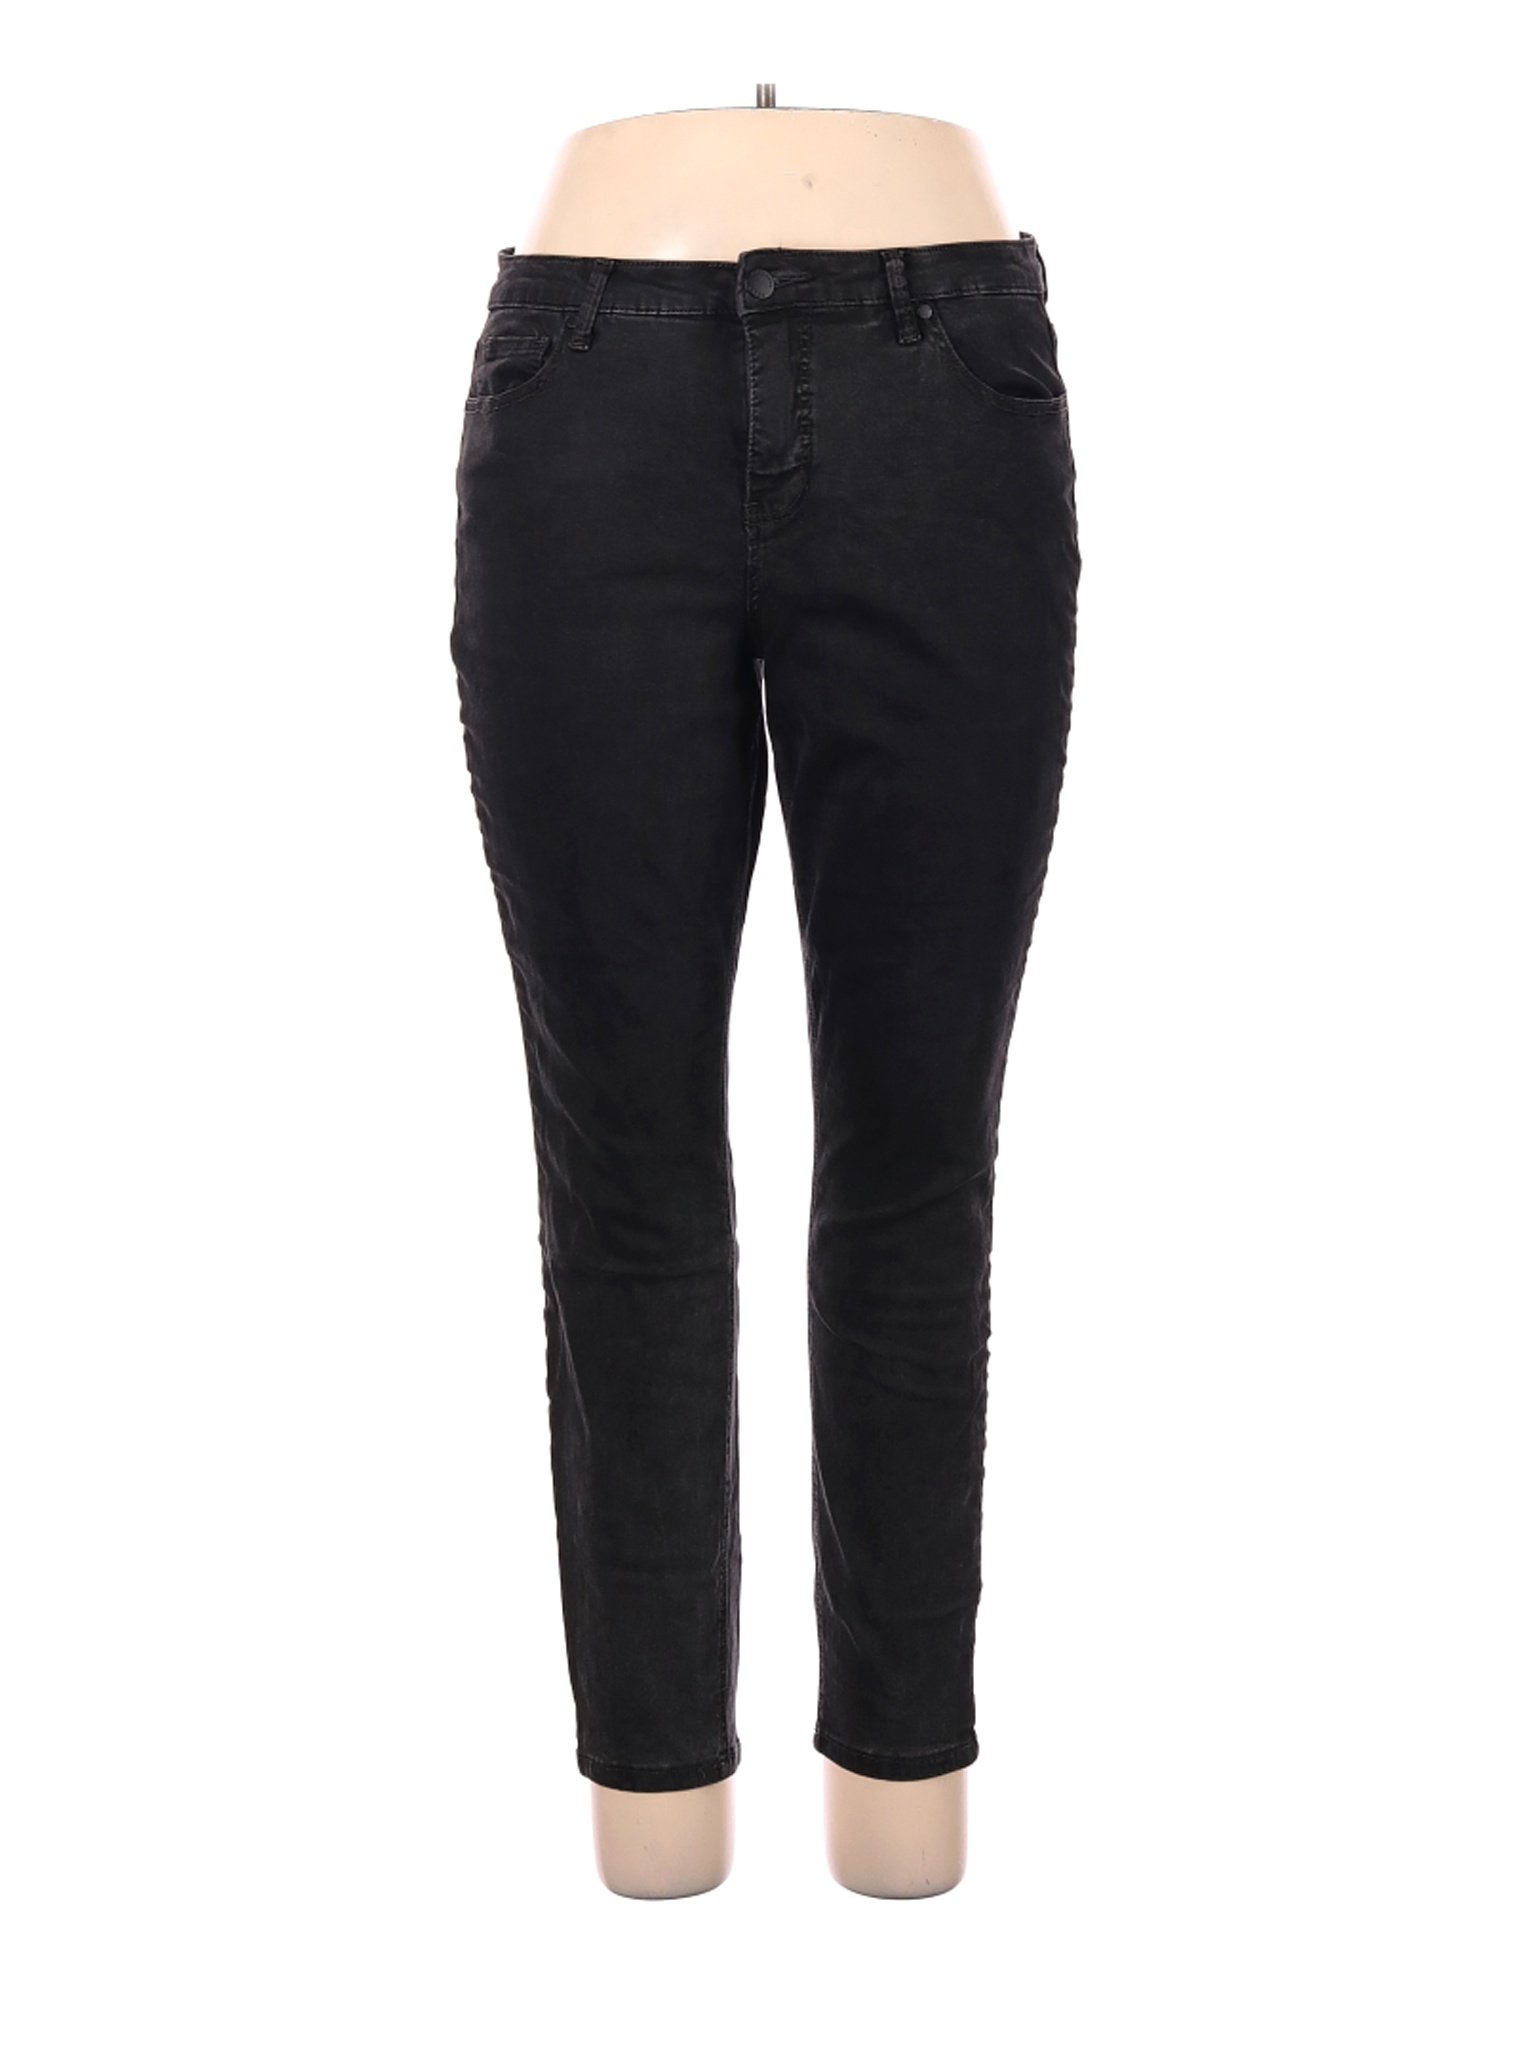 Ruff Hewn Women Black Jeans 16 | eBay